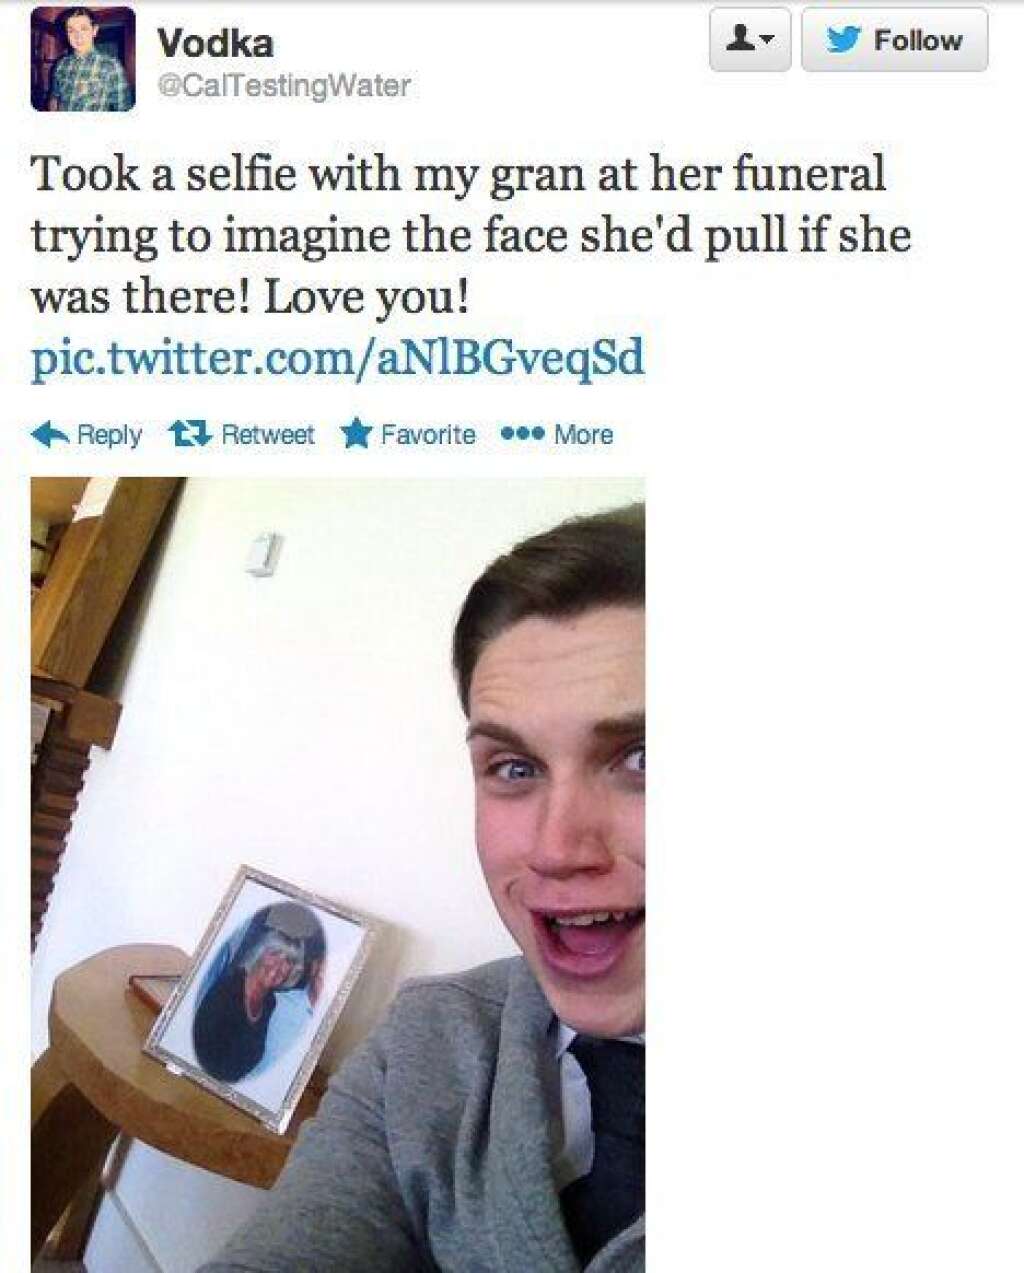 Selfies at Funerals - "J'ai pris un selfie avec ma grand-mère à son enterrement, j'aimerais voir la tronche qu'elle ferait si elle avait été là ! Je t'aime Mamie !"